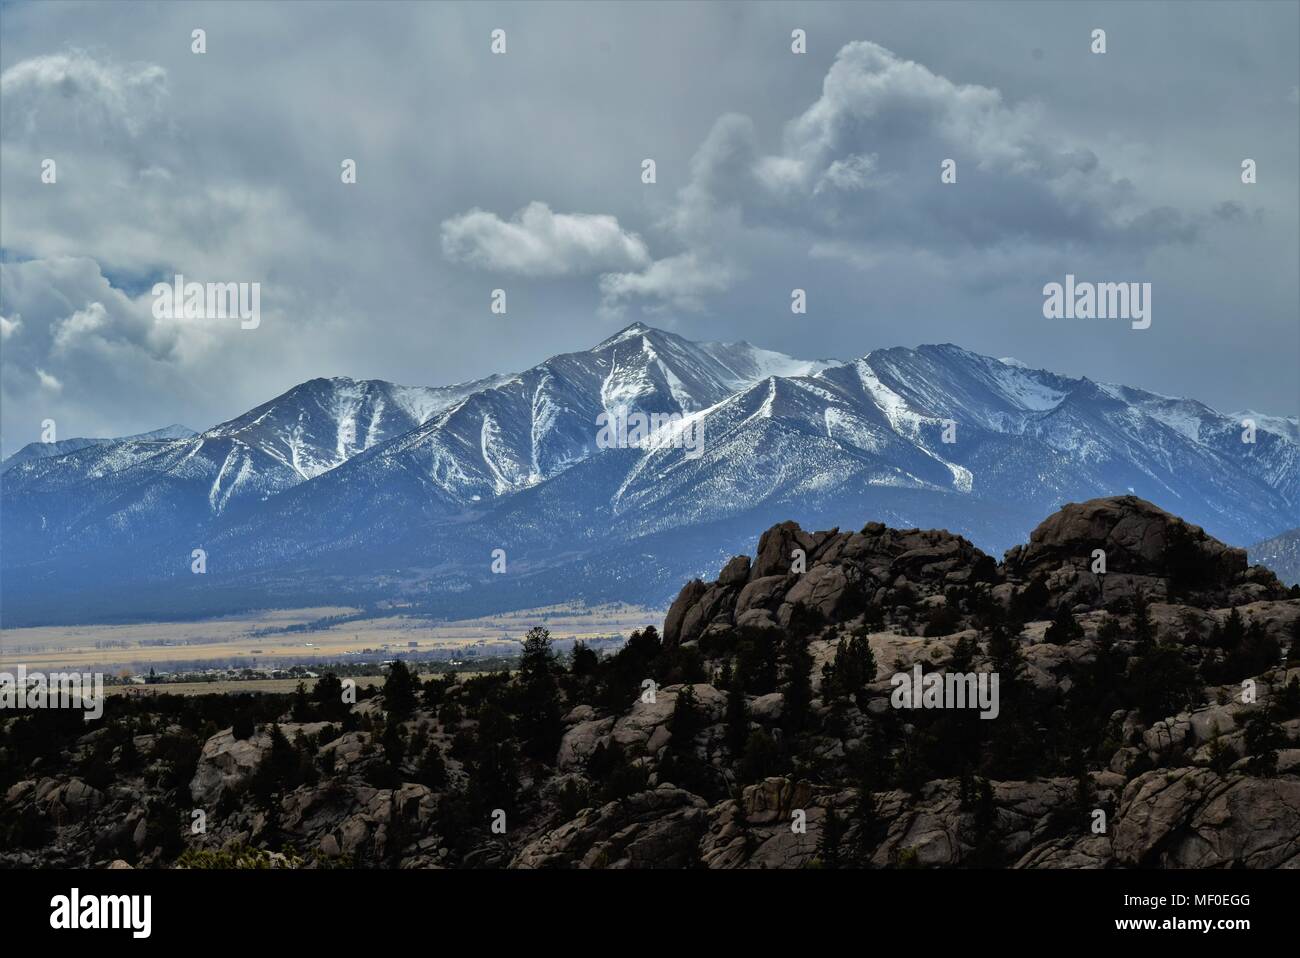 Parzialmente in cielo molto nuvoloso con visibile cielo chiaro su cime Mount Princeton (della collegiata picchi mountain range) nella splendida Buena Vista, Colorado Foto Stock